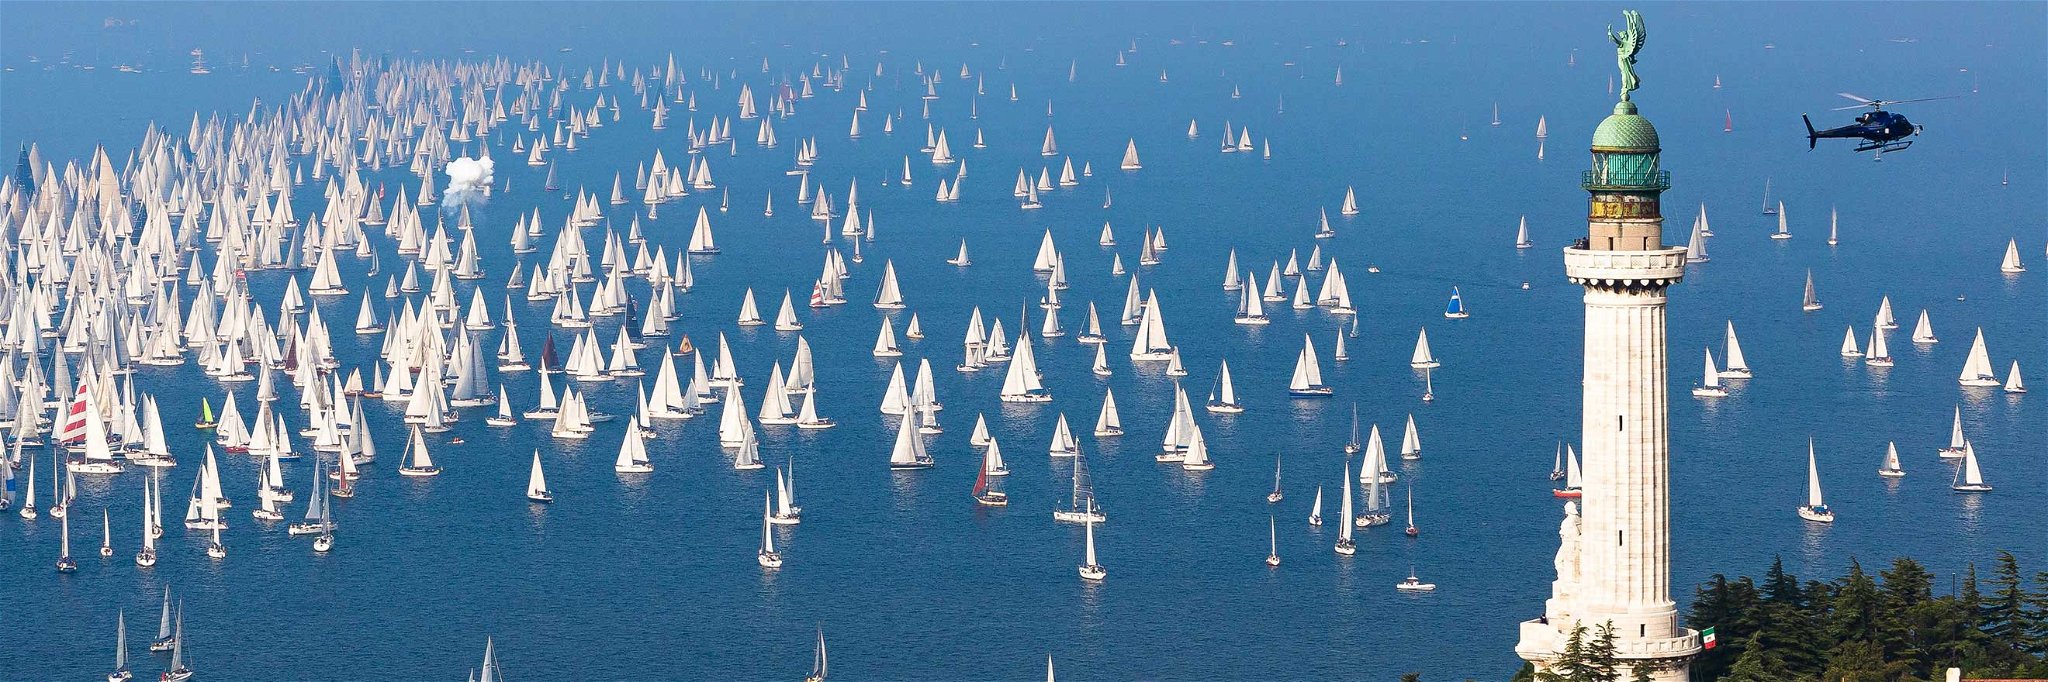 Die berühmte Barcolana im Golf von Triest ist mit mehr als 2500 Booten die weltweit größte Segelregatta.